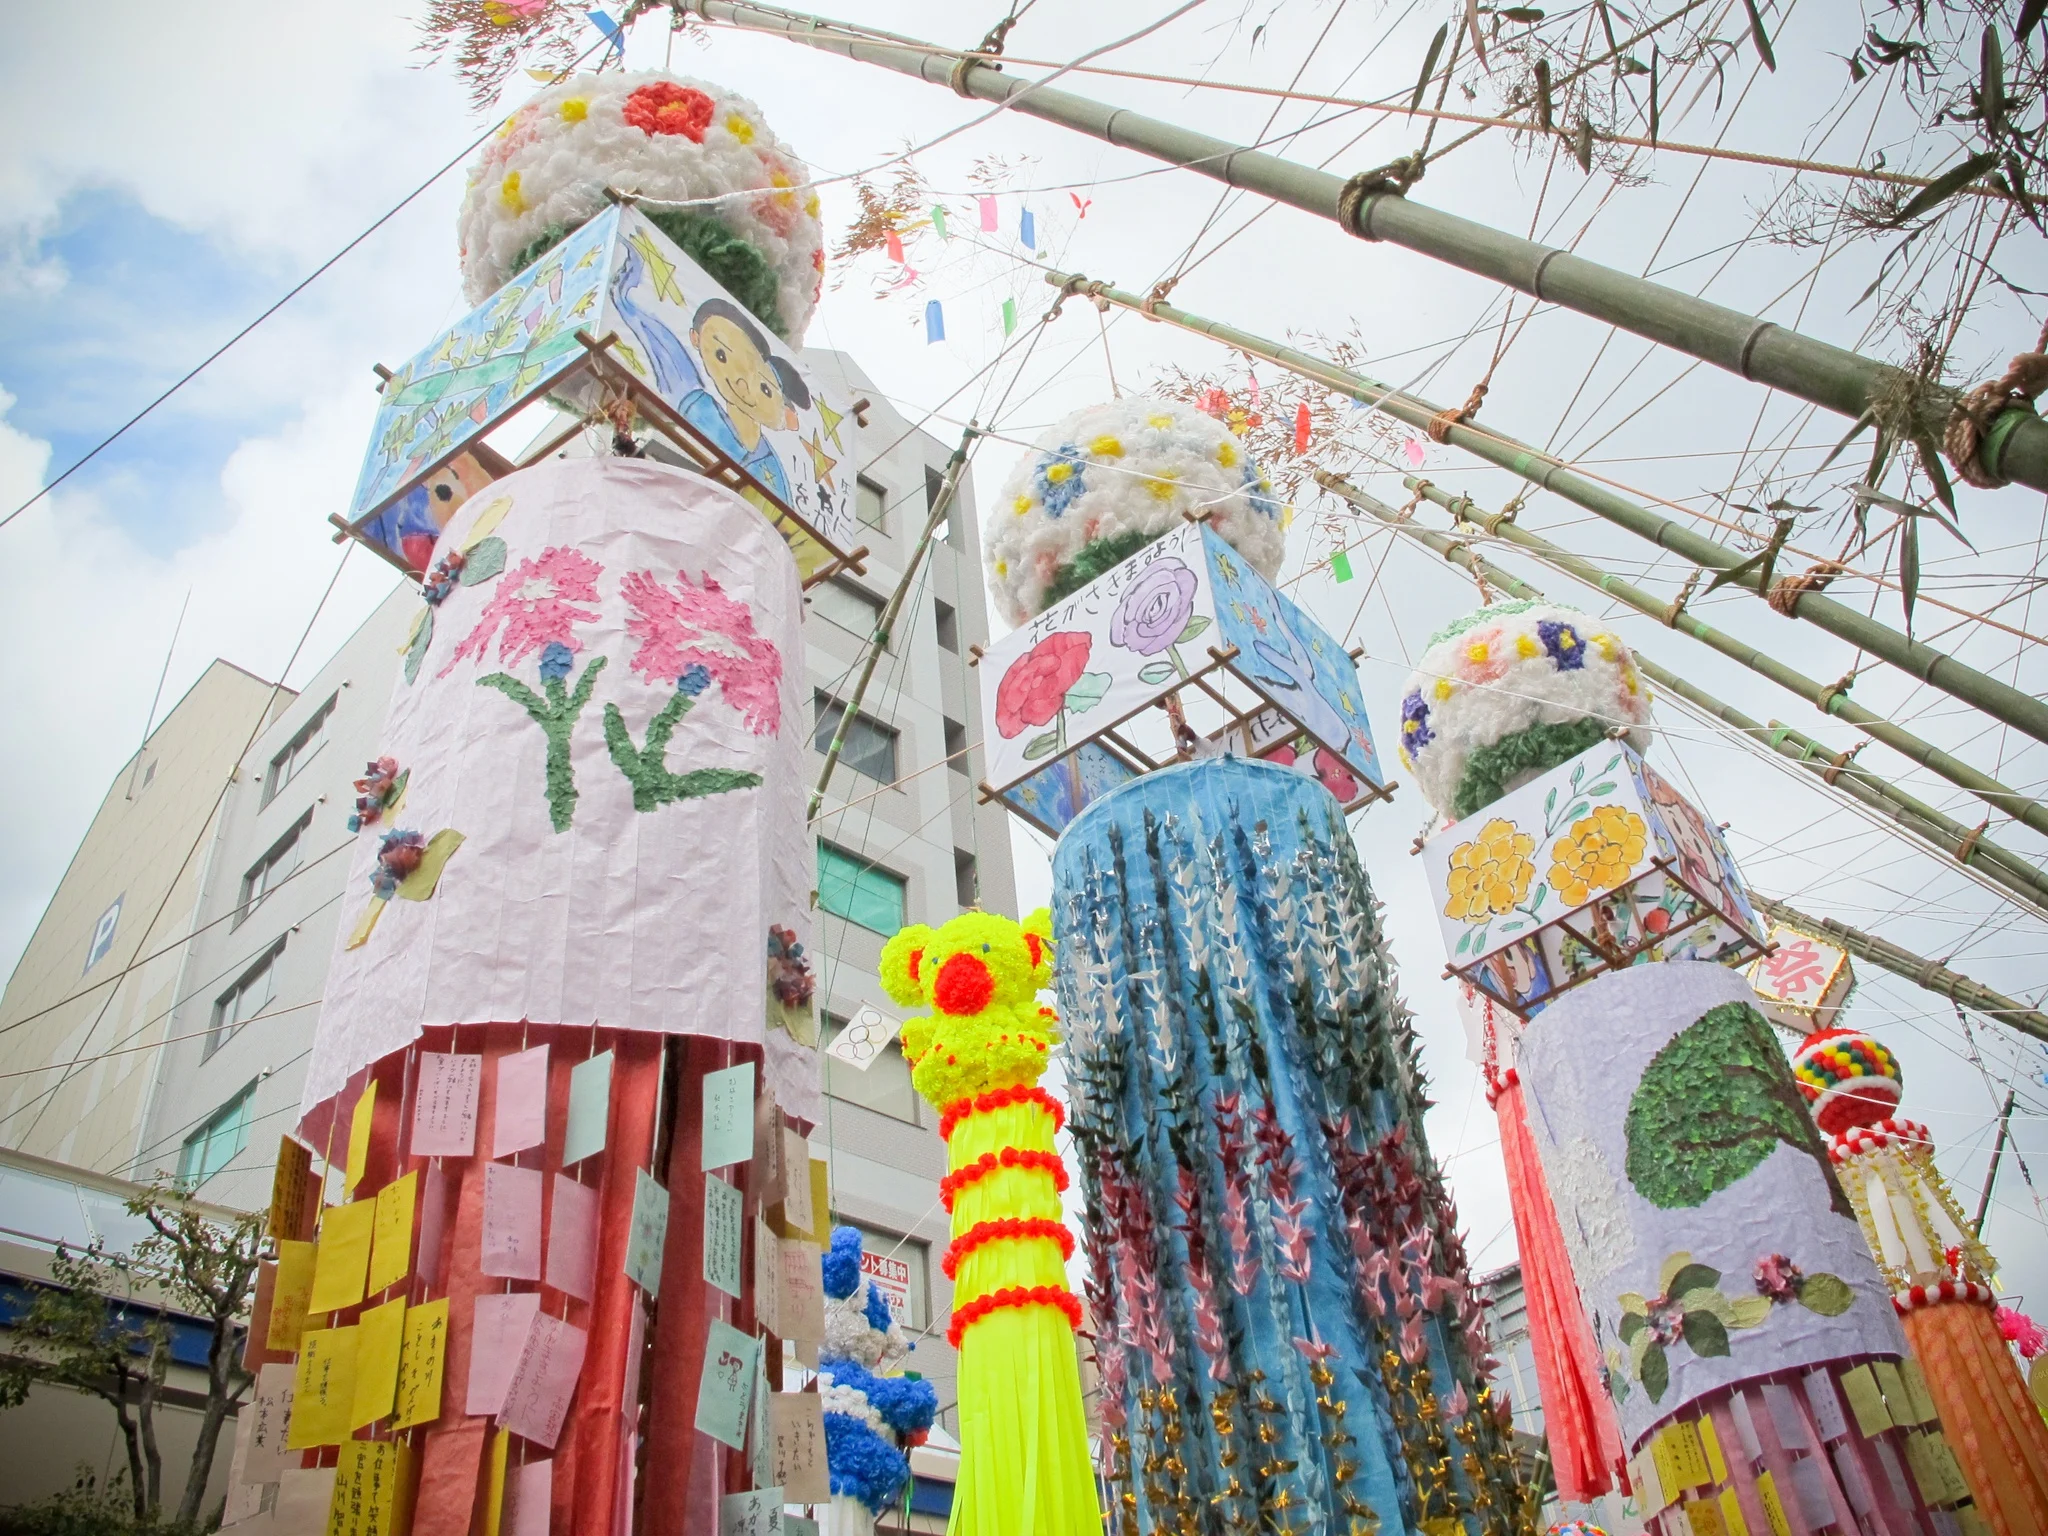 Hiratsuka Tanabata Festival, Kanagawa, Japan